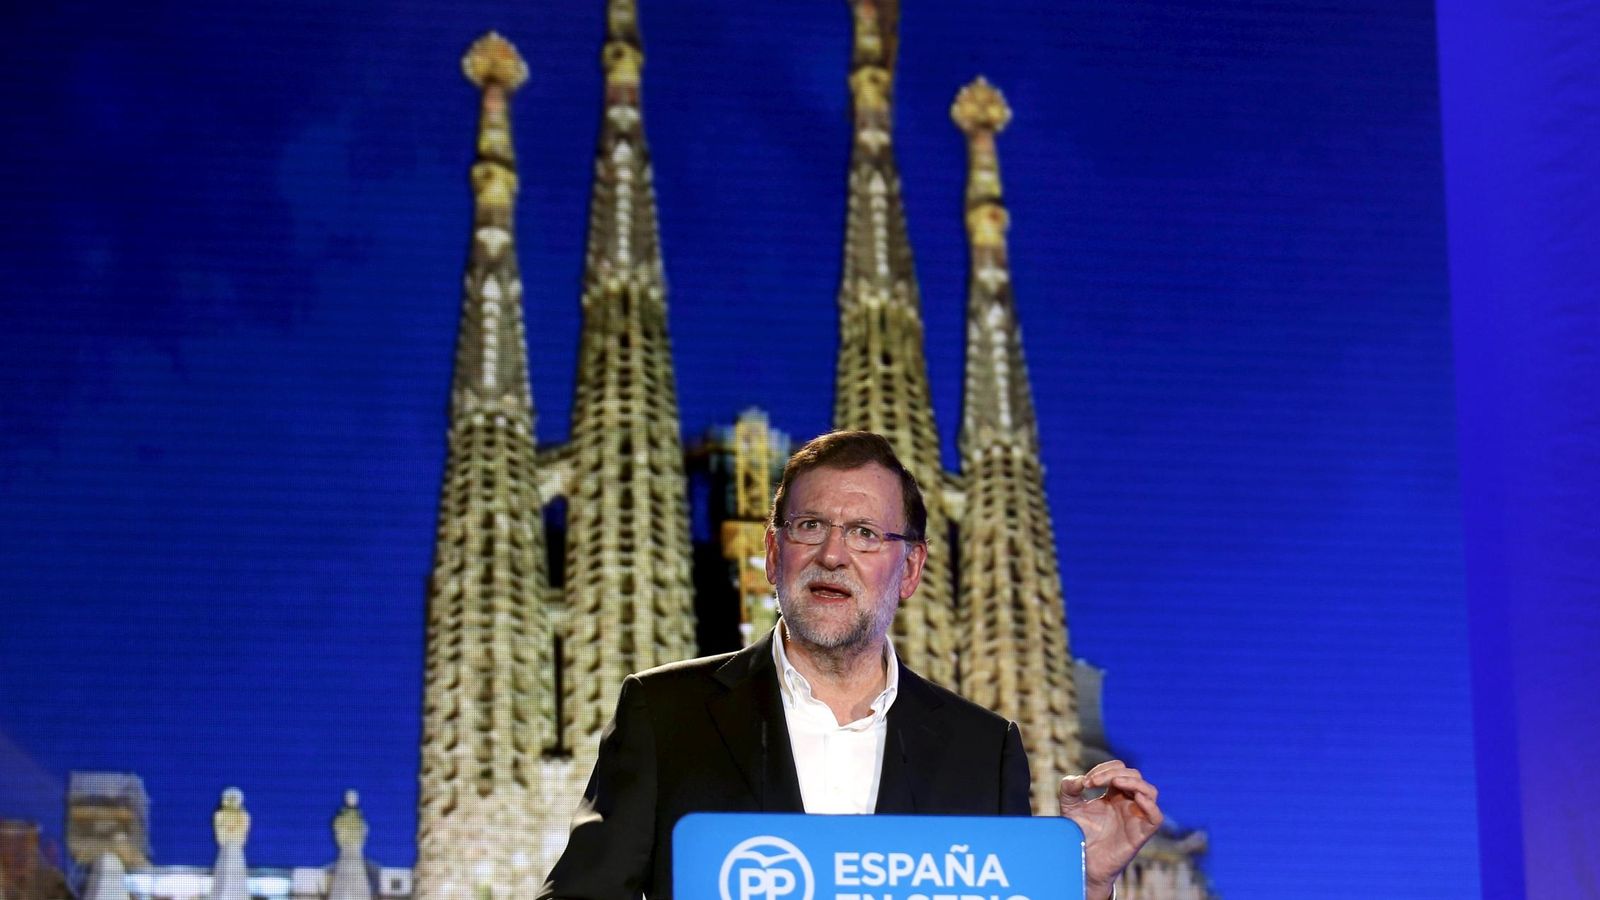 Foto: El presidente del Gobierno, Mariano Rajoy, durante su intervención en un mitin en Barcelona. (Reuters)